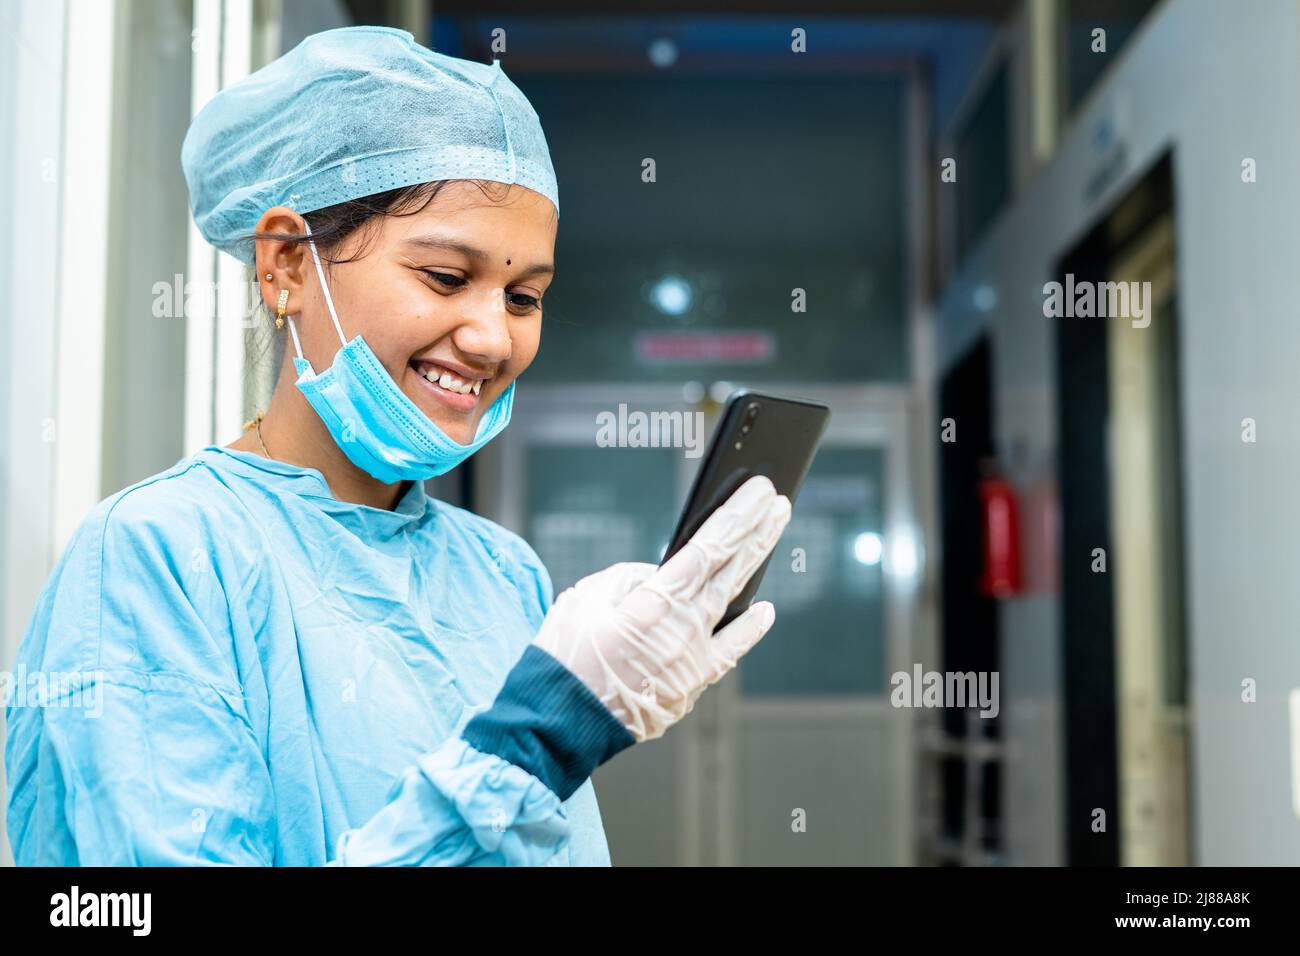 Glücklich lächelnder Arzt beschäftigt mit Handy im Krankenhaus Korridor - Konzept der Verwendung von Social Medica, Technologie und Internet Stockfoto